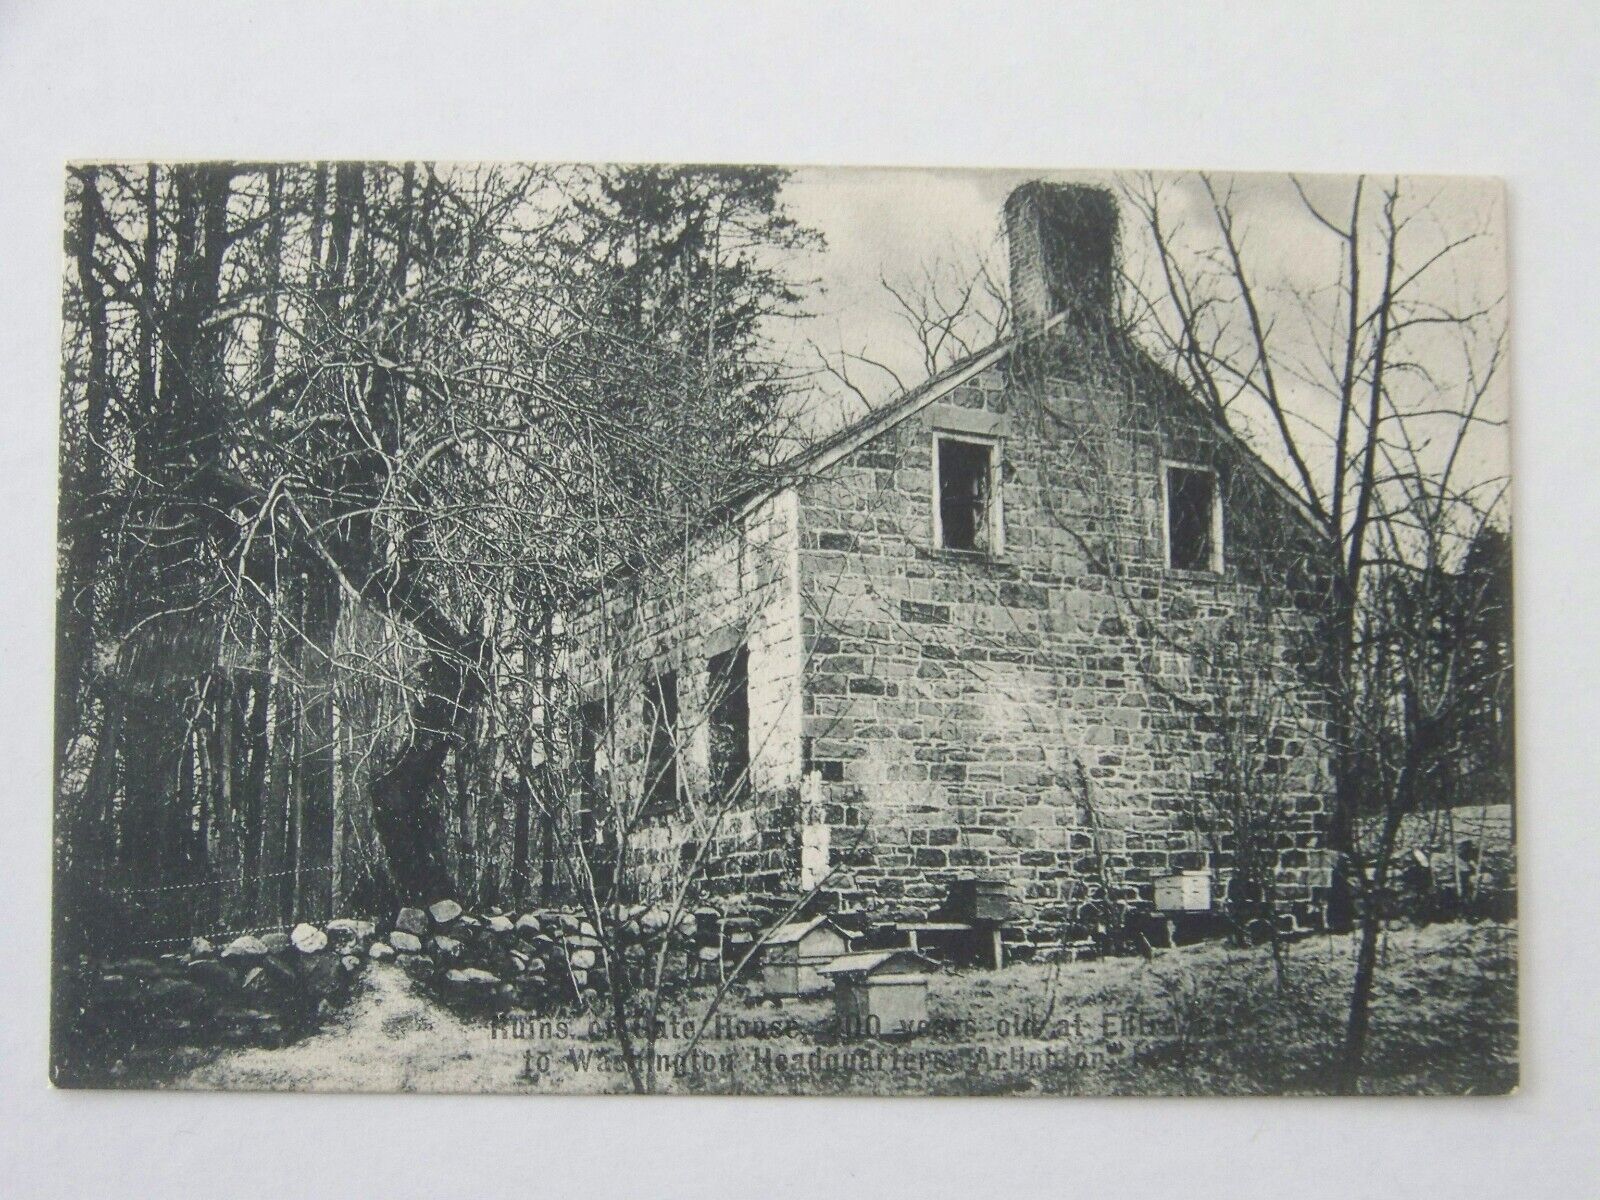 Arlington New Jersey NJ Kearny 1909 Washington Headquarters Ruins